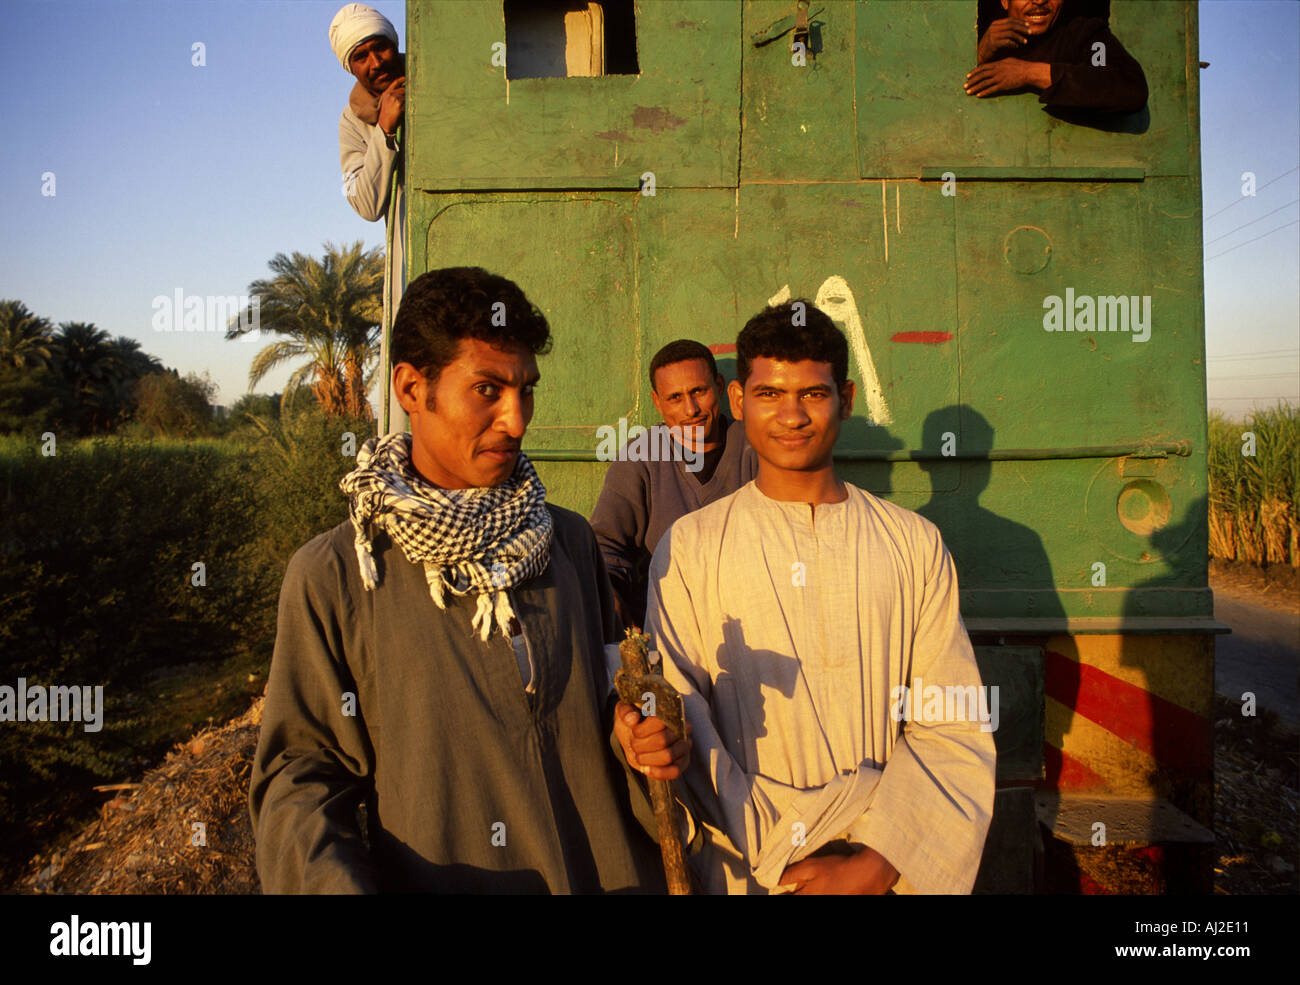 Männer auf eine Zucker-Ernte Zug 15k südlich New Qurna Ägypten Nil Senke. Stockfoto